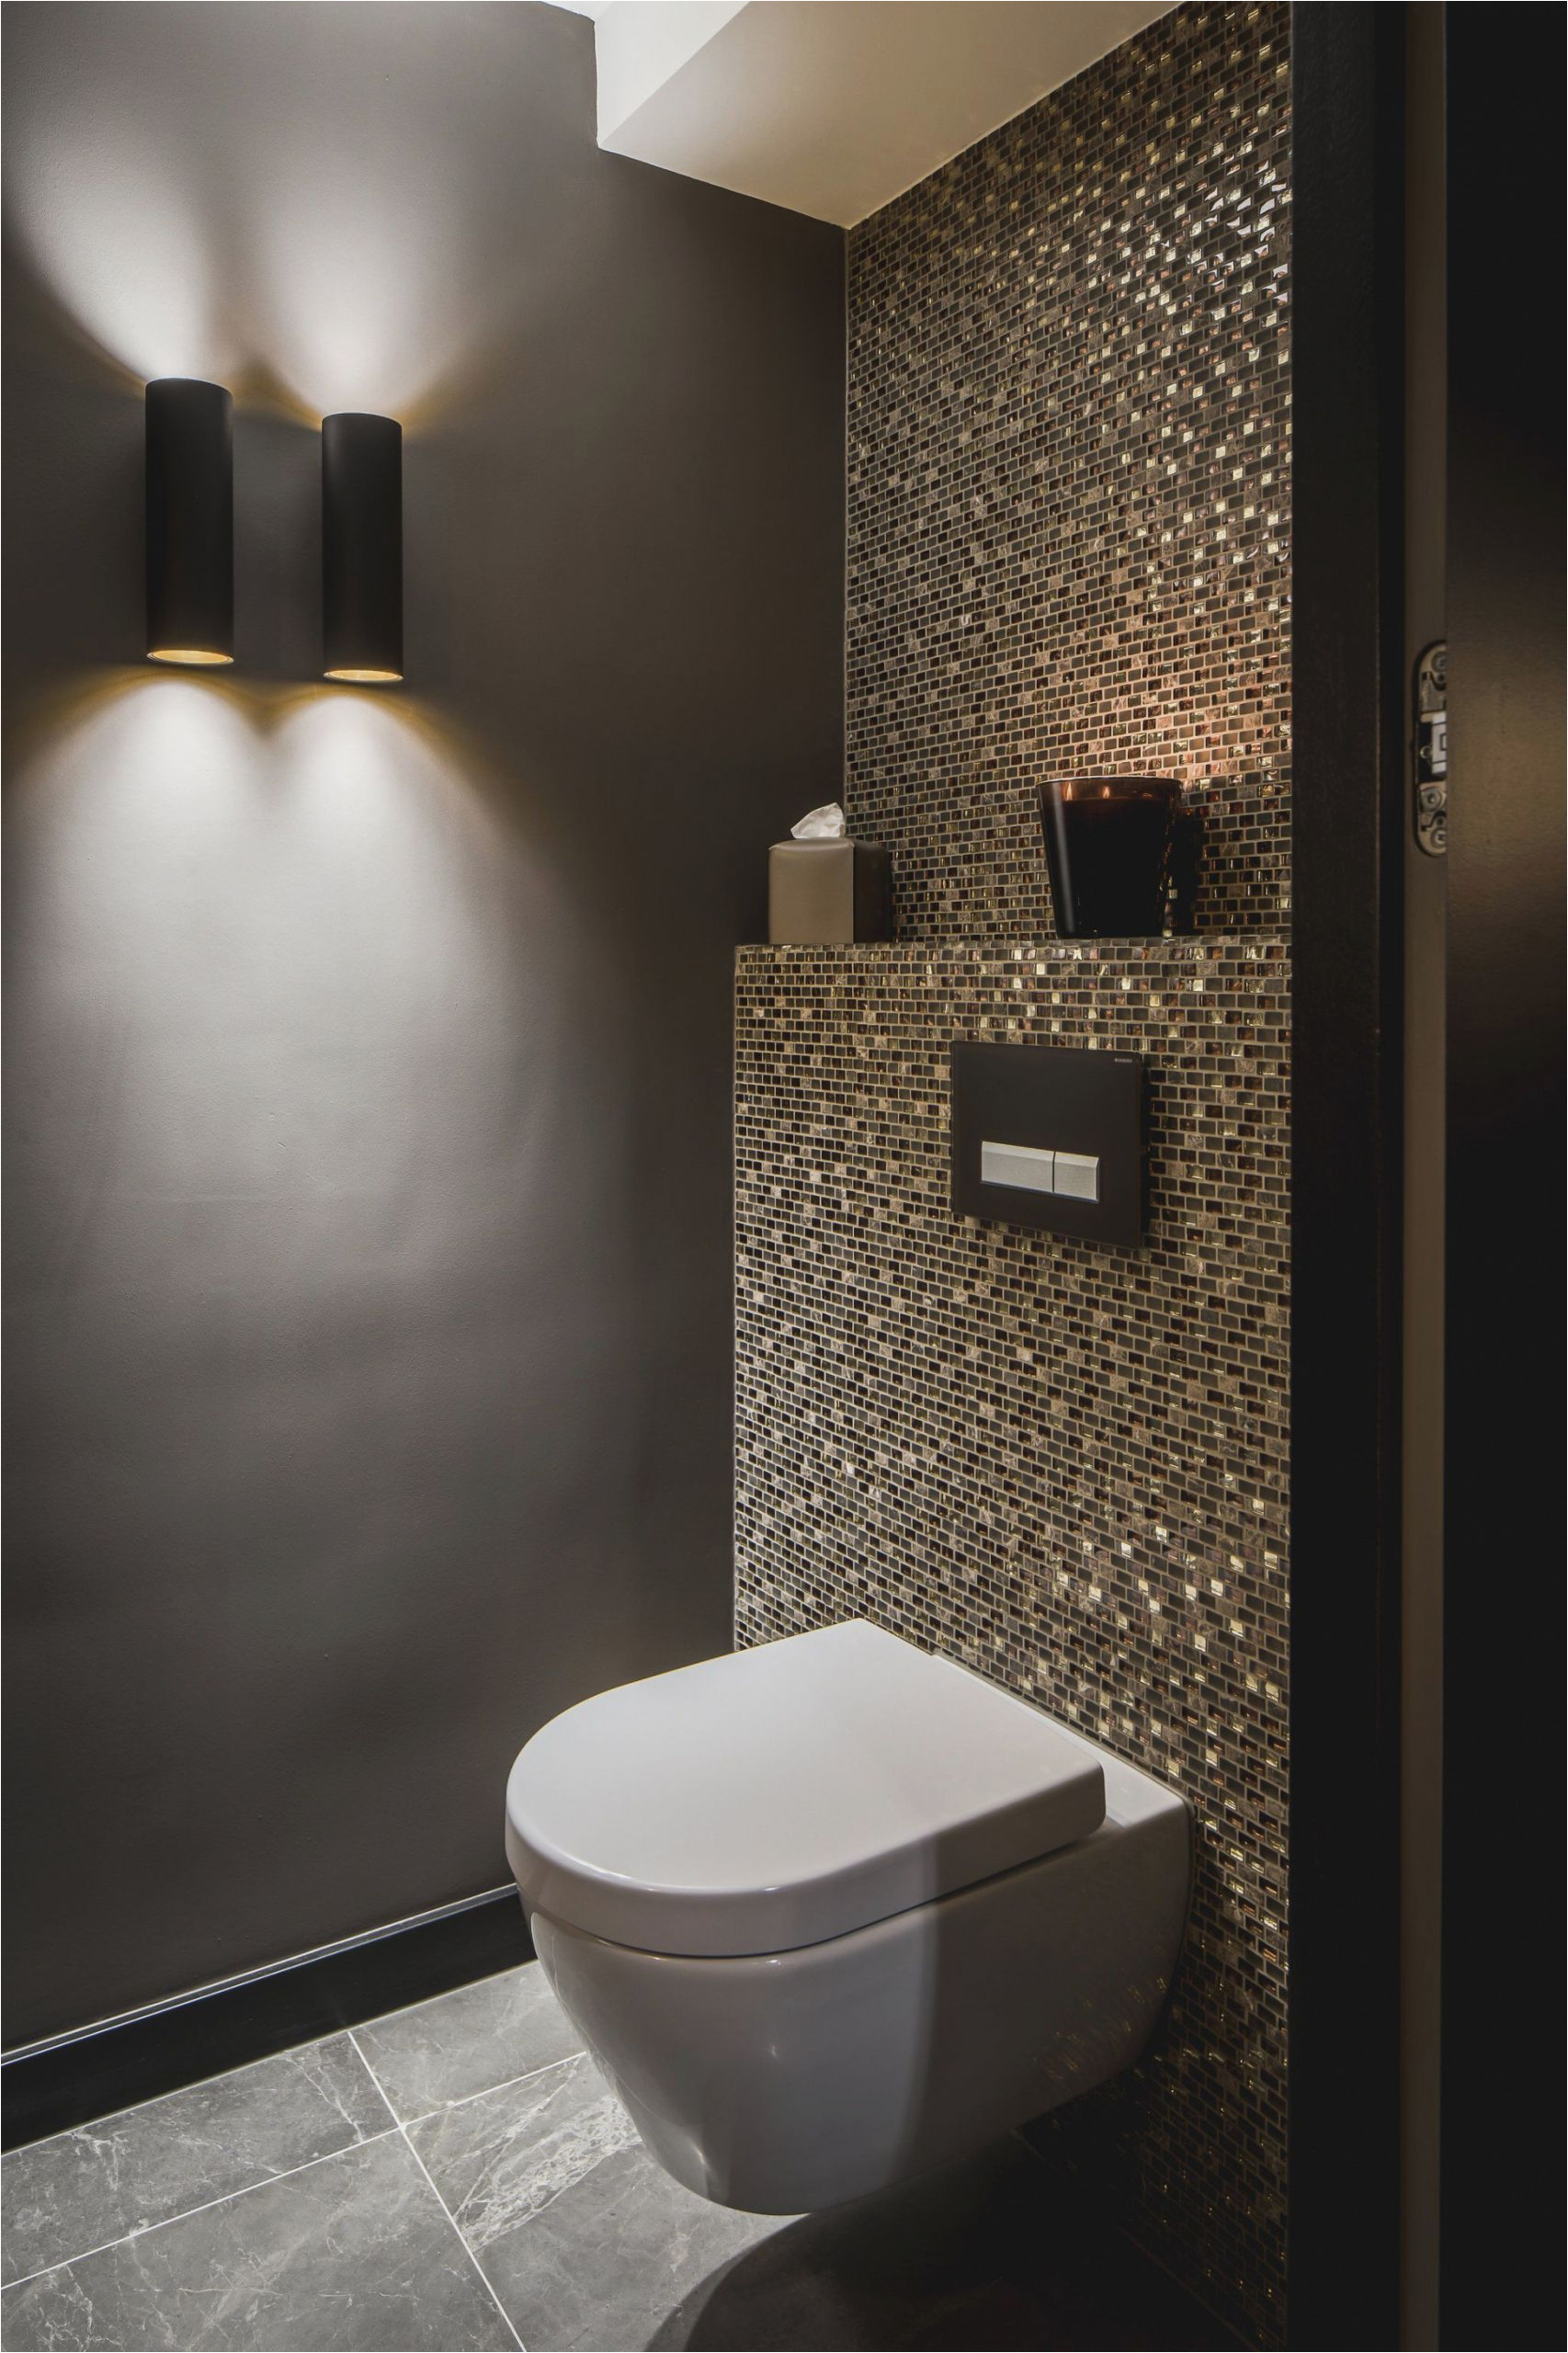 spiegel fur badezimmer beeindruckend toilette mit waschbecken temobardz home blog of spiegel fur badezimmer scaled